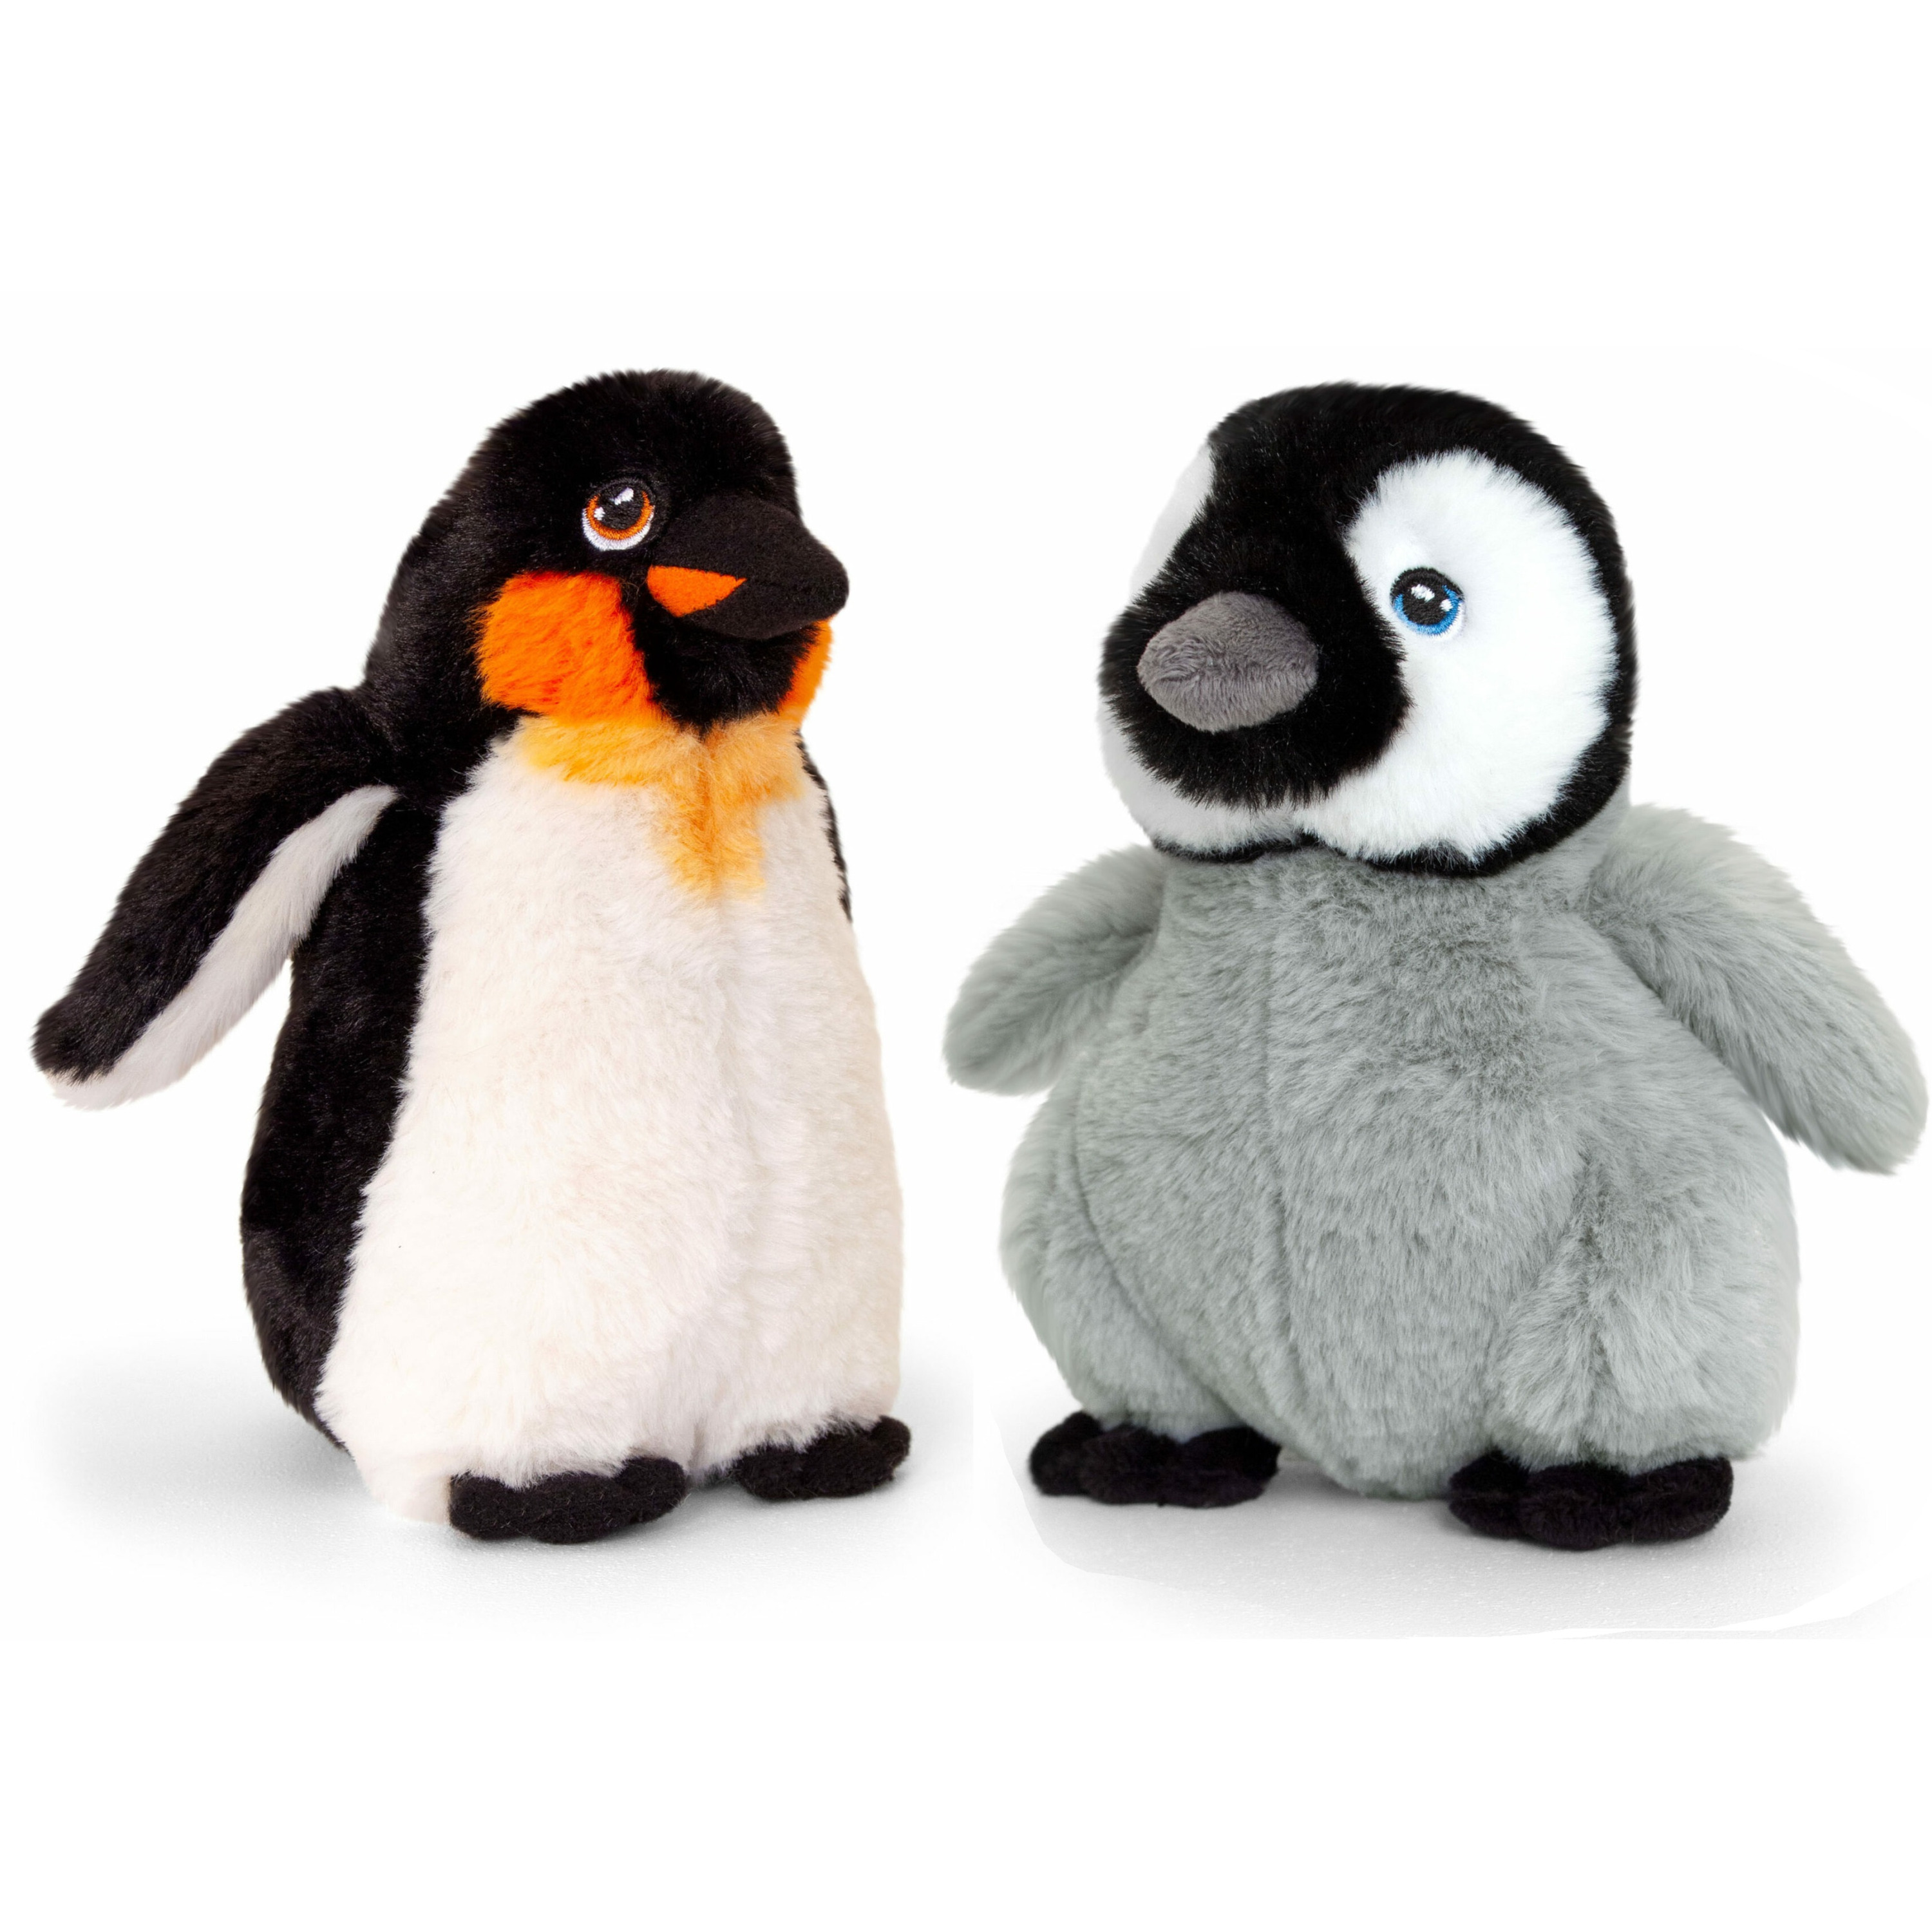 Merkloos Keel Toys pluche Keizer pinguin met jong knuffeldieren - wit/zwart - staand - 25 cm -